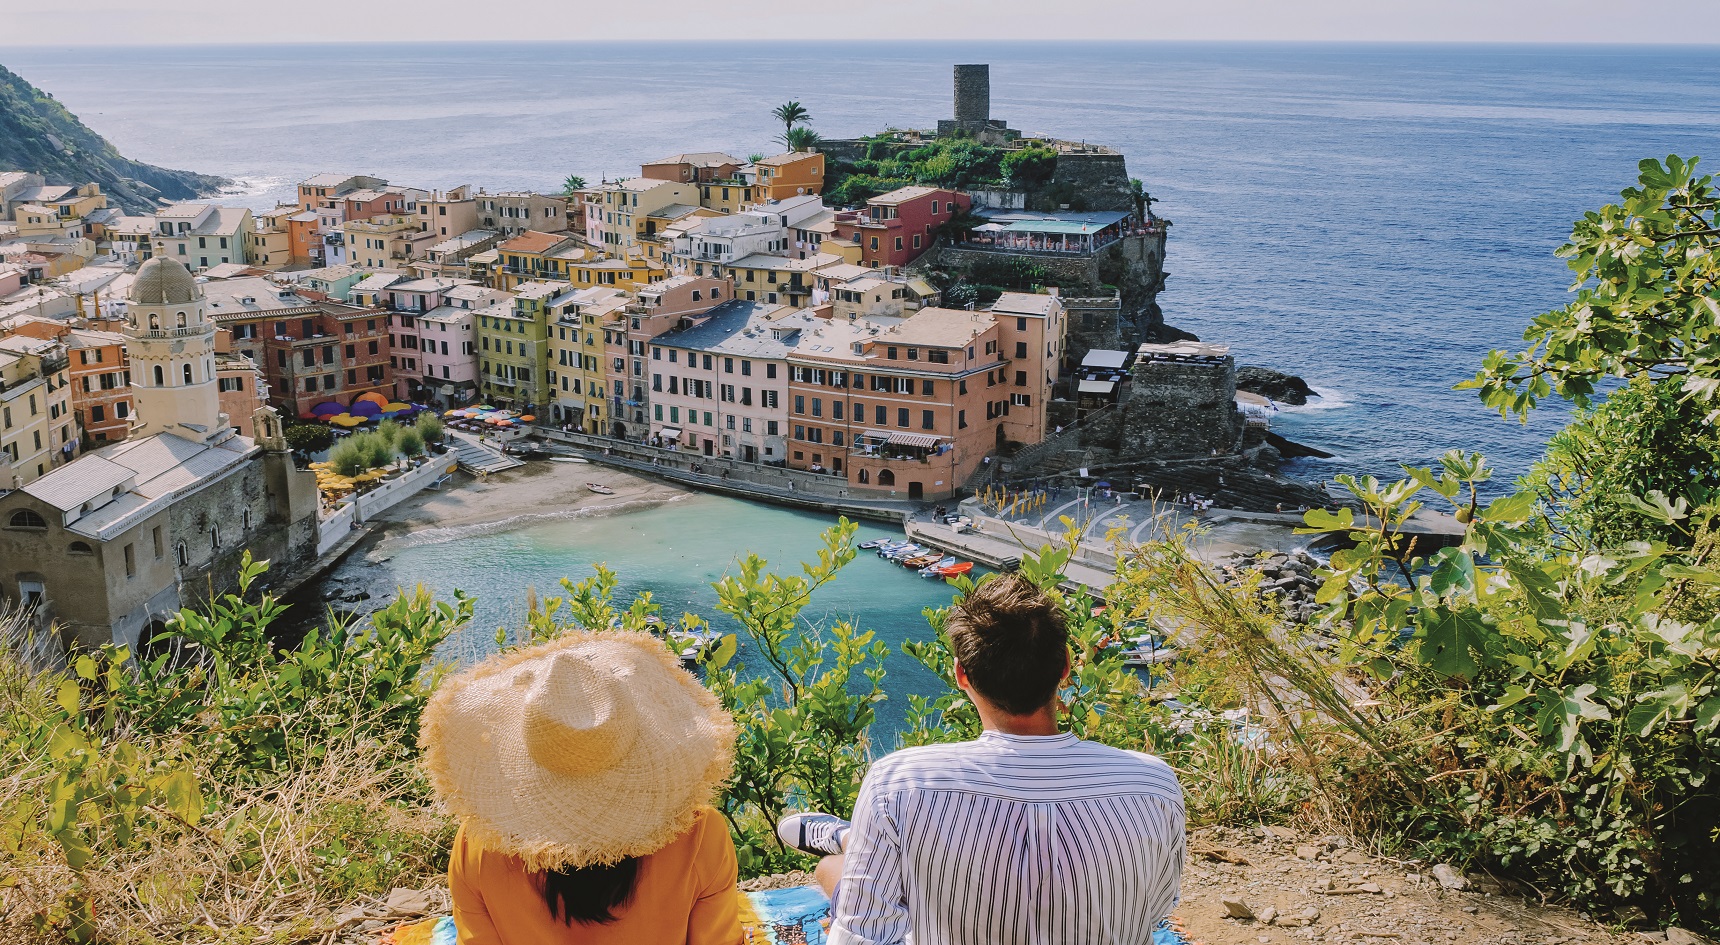 Picturesque coastal village in Cinque Terre, Italy